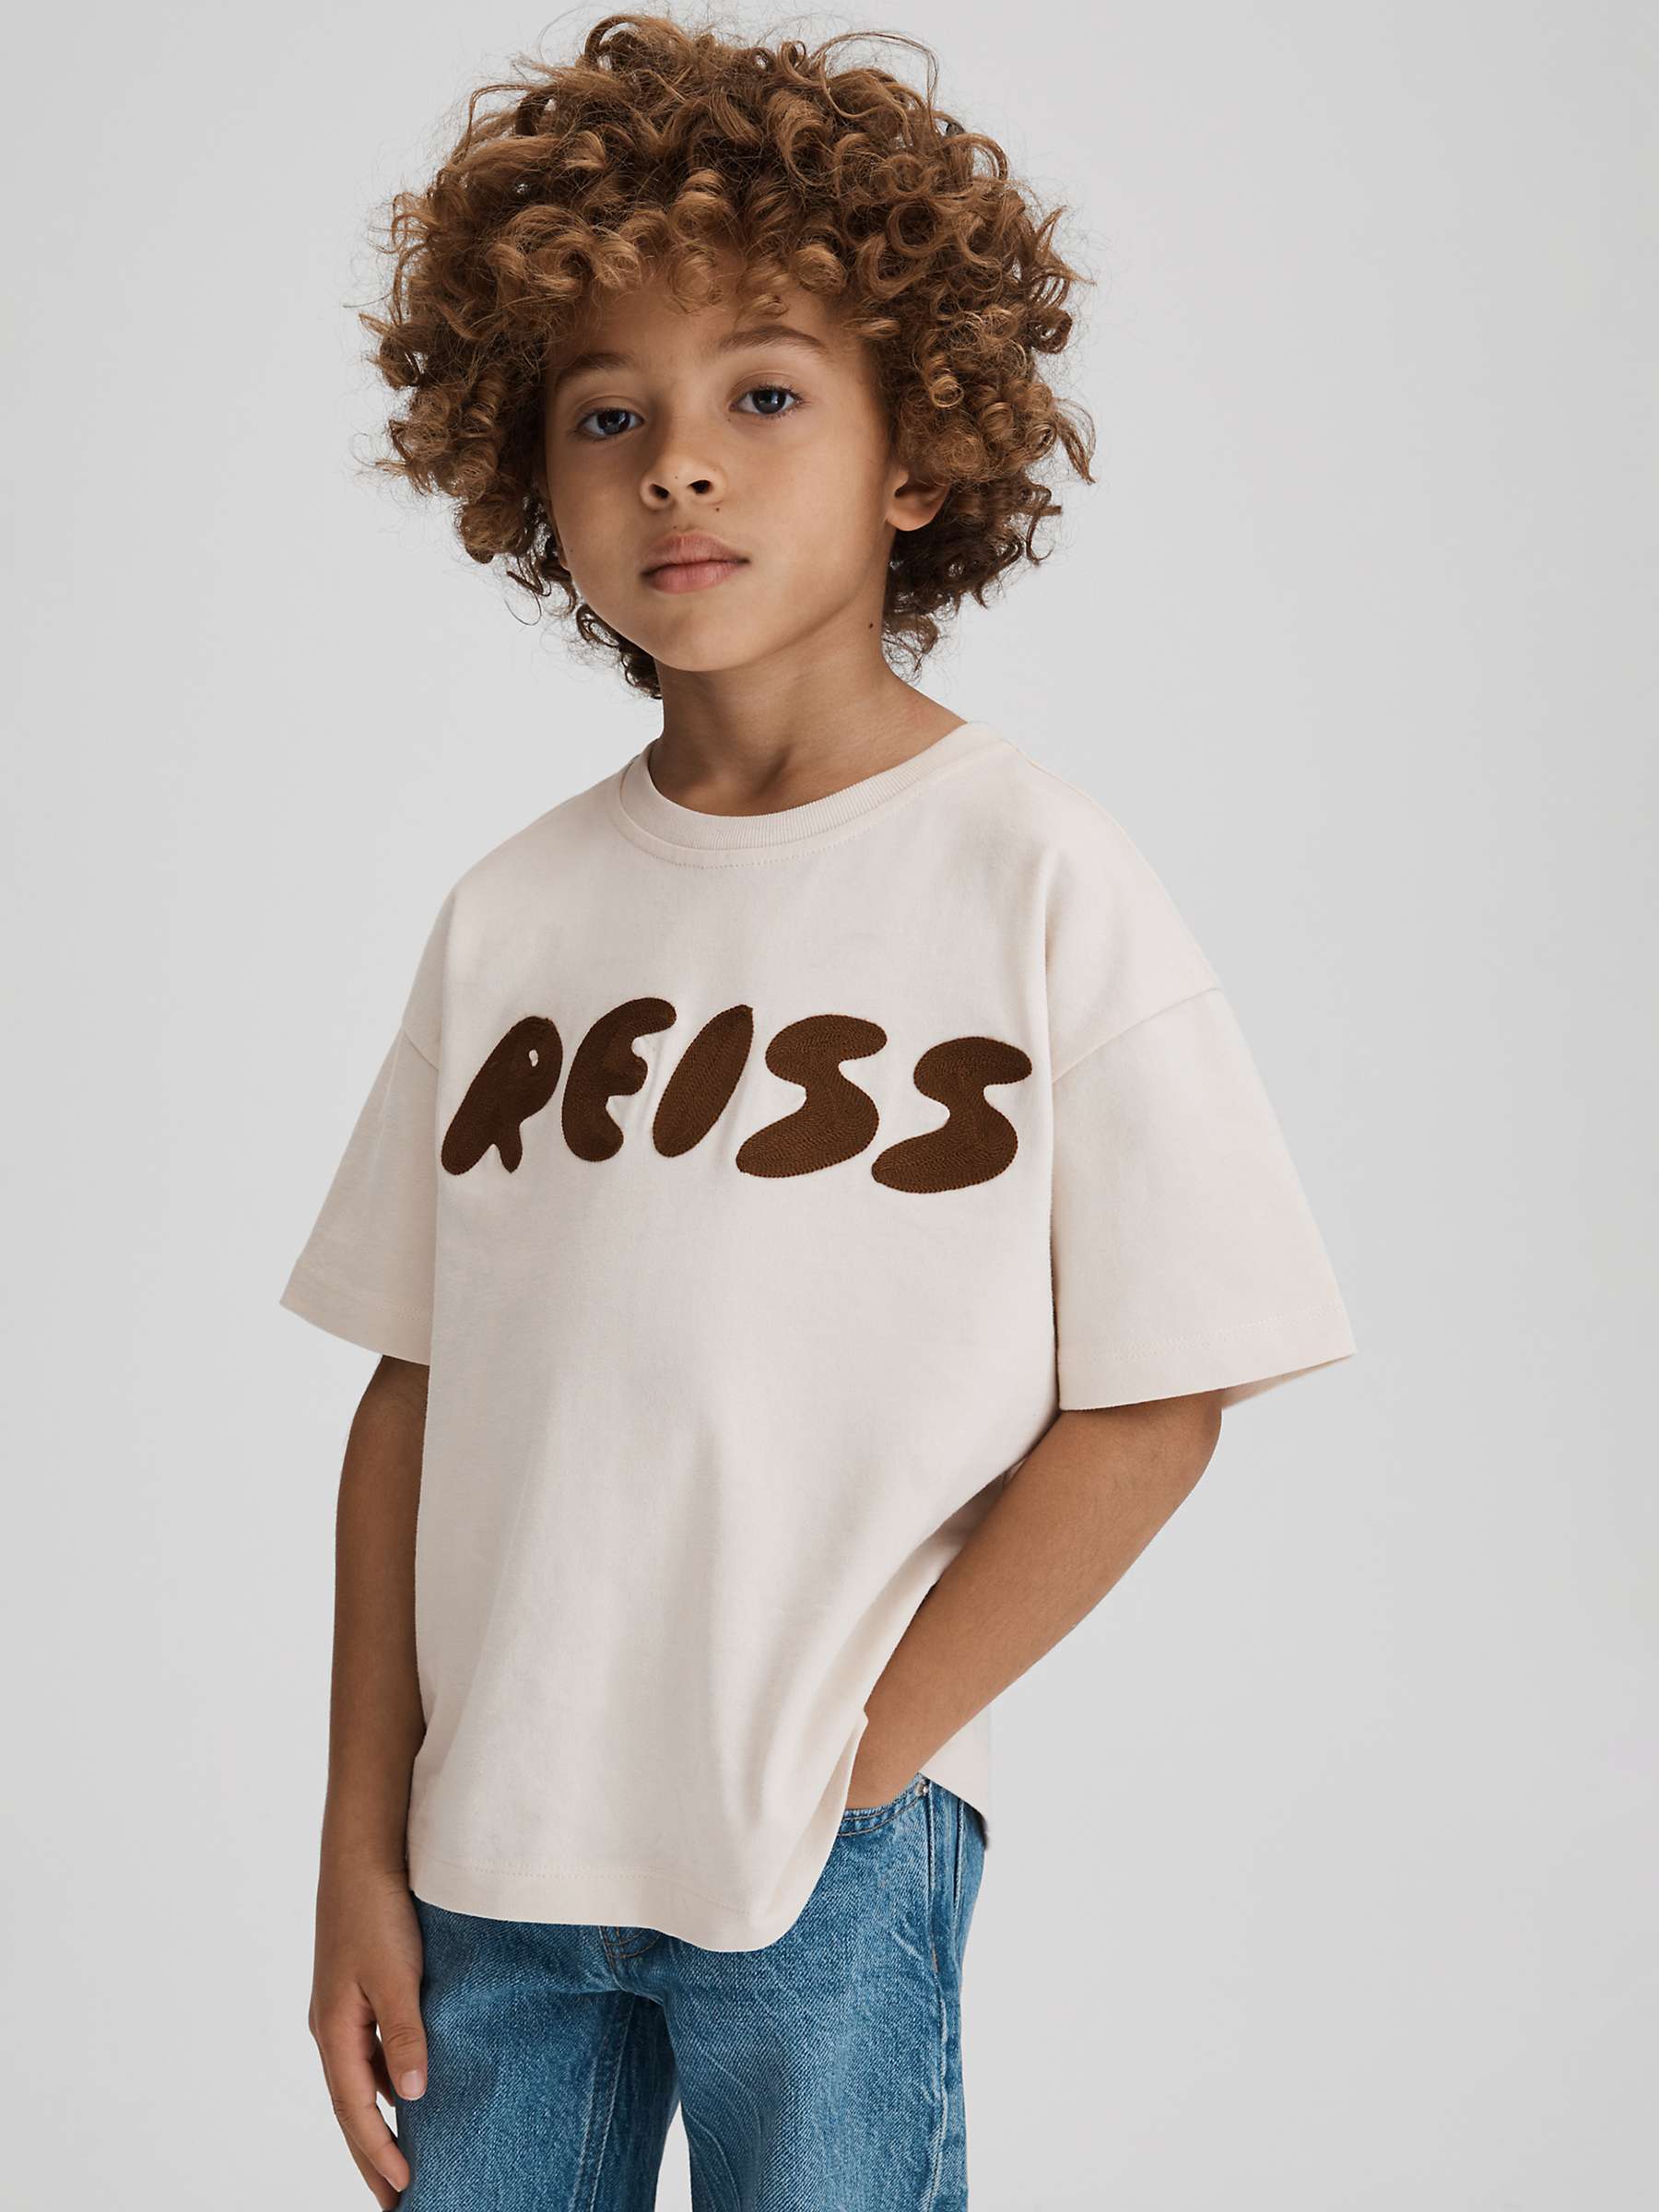 Buy Reiss Kids' Sands Logo Motif Crew Neck T-Shirt, Ecru Online at johnlewis.com